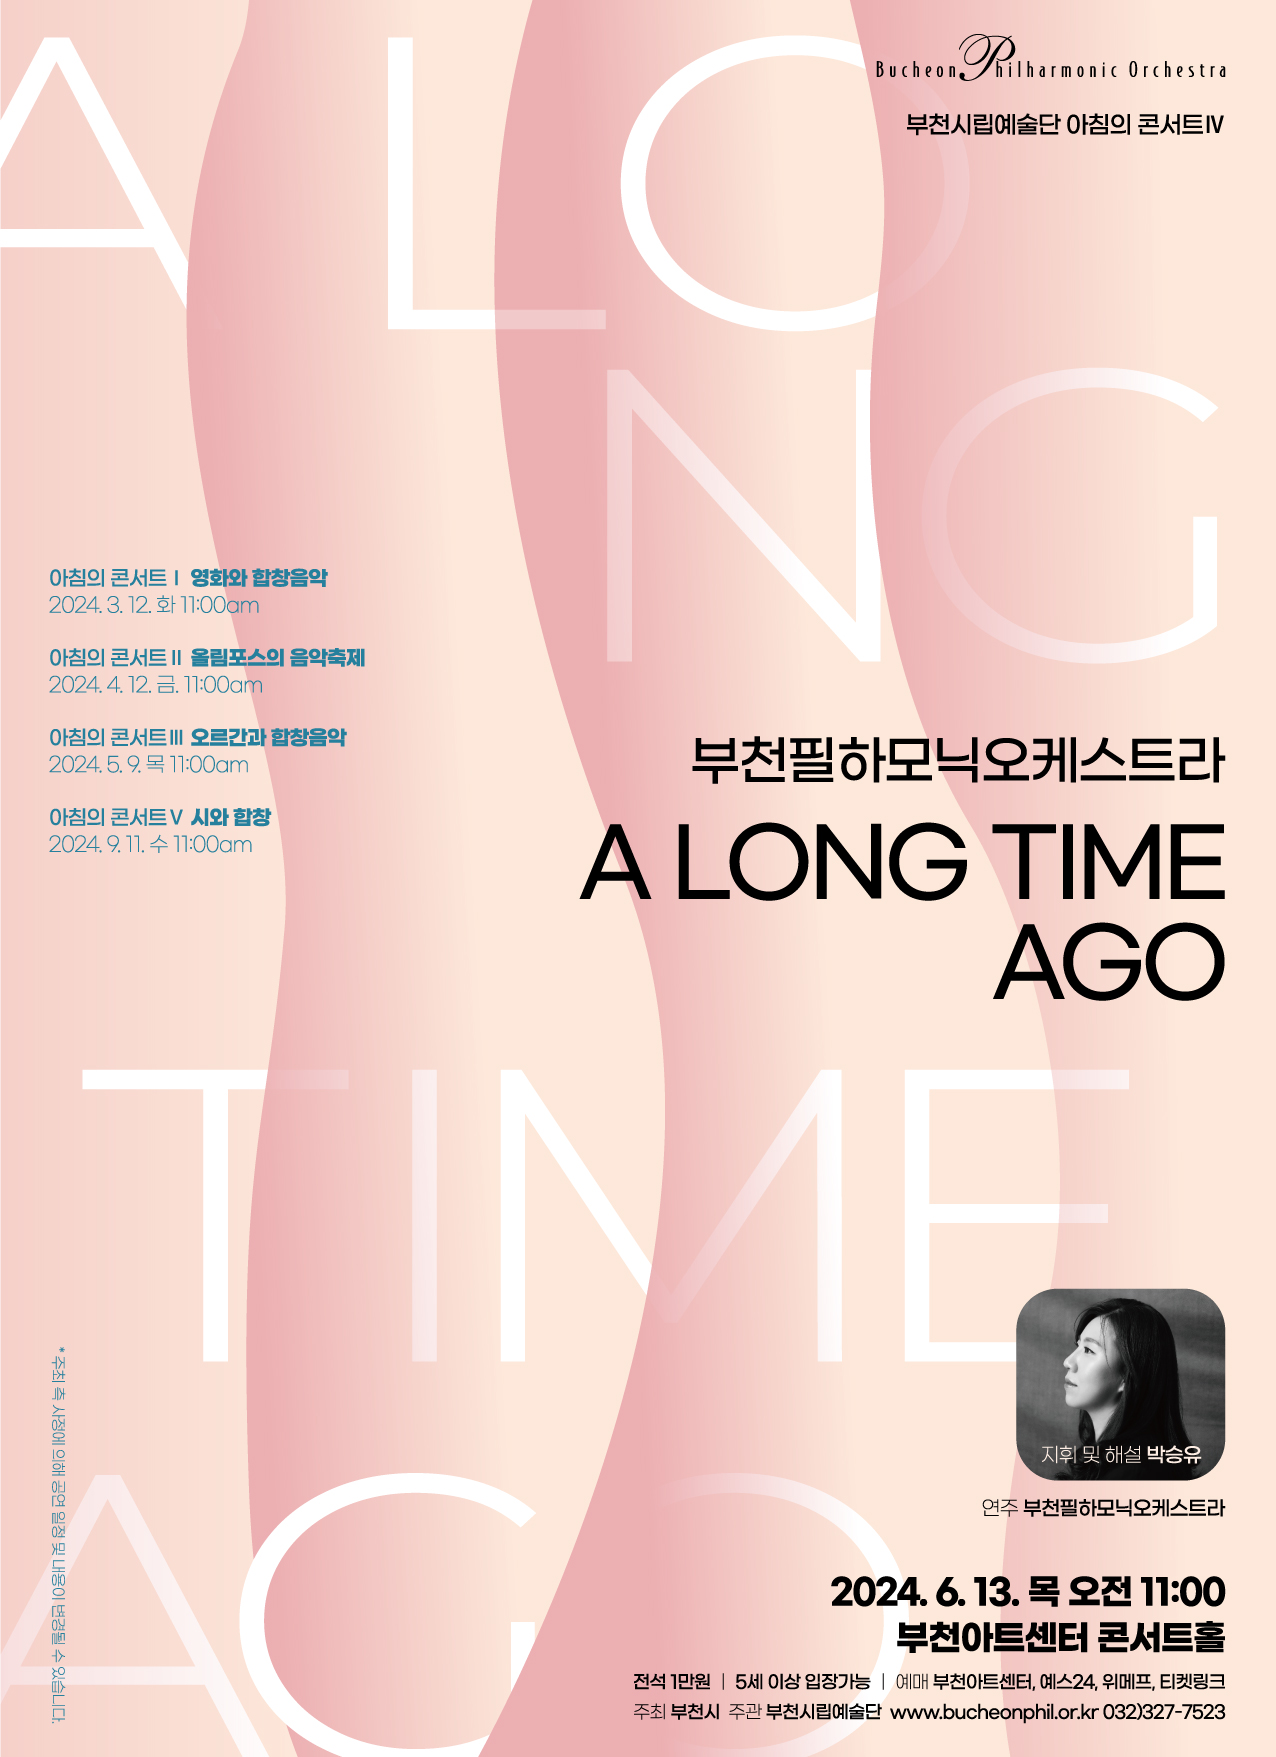 [6.13]부천필하모닉오케스트라 아침의 콘서트 'A long time ago'